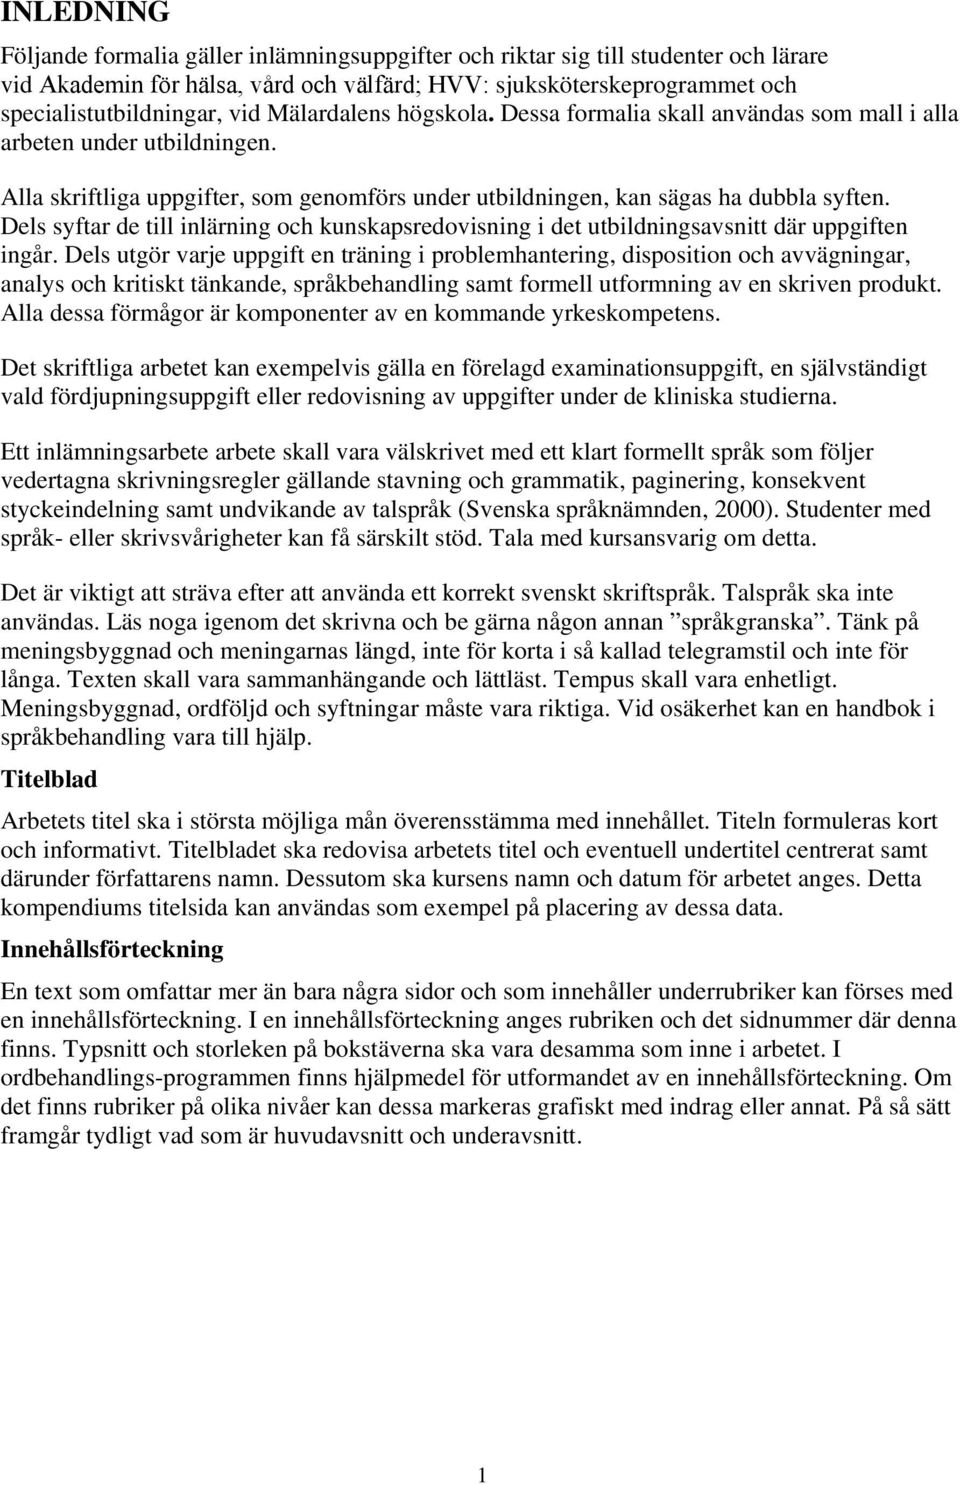 FORMALIA FÖR INLÄMNINGSUPPGIFTER Akademin för hälsa, vård och välfärd; HVV  - PDF Free Download